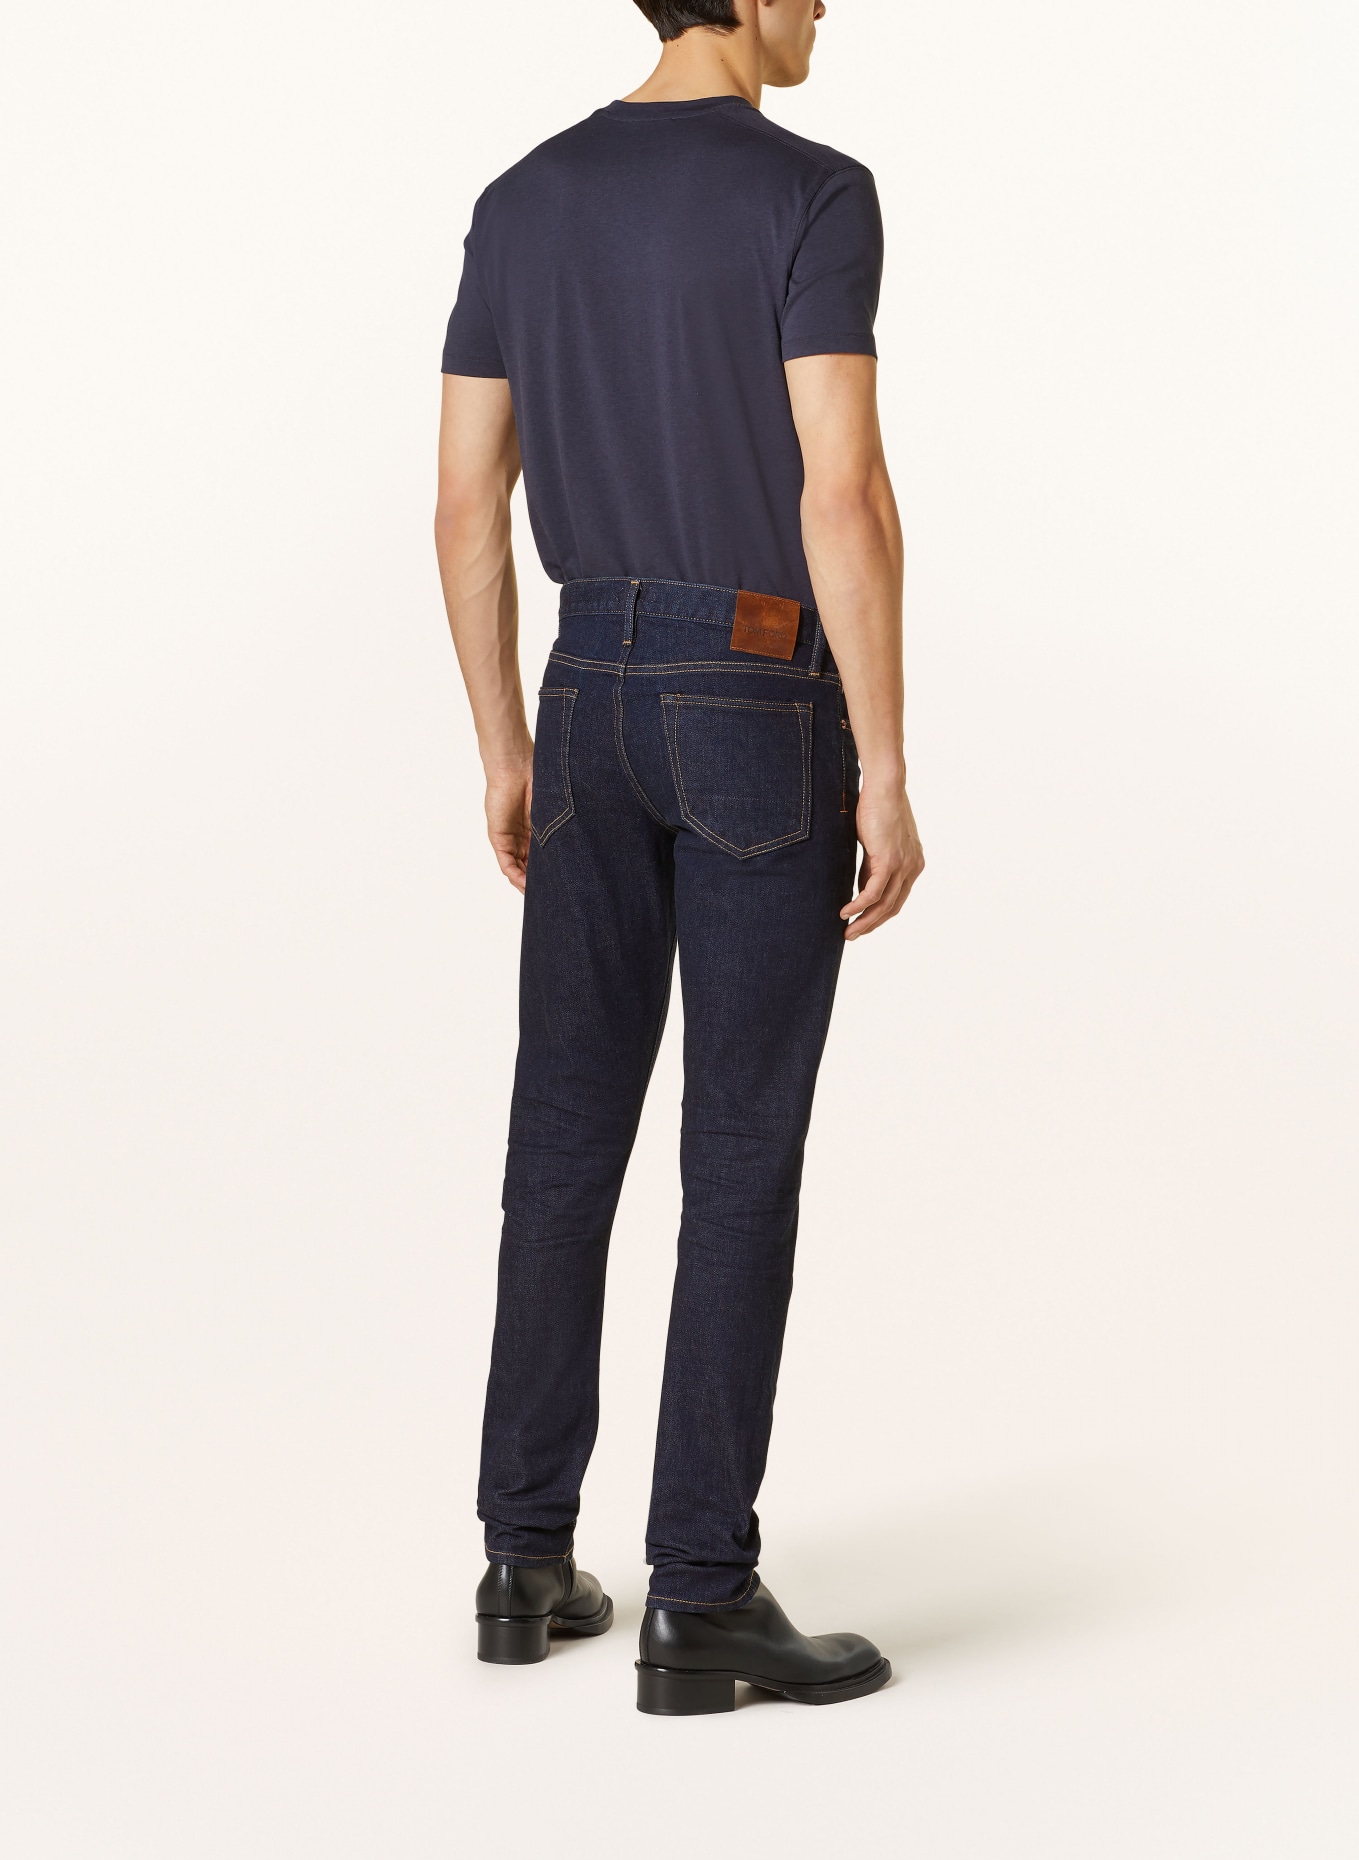 TOM FORD Jeans slim fit, Color: HB800 BLUE (Image 3)